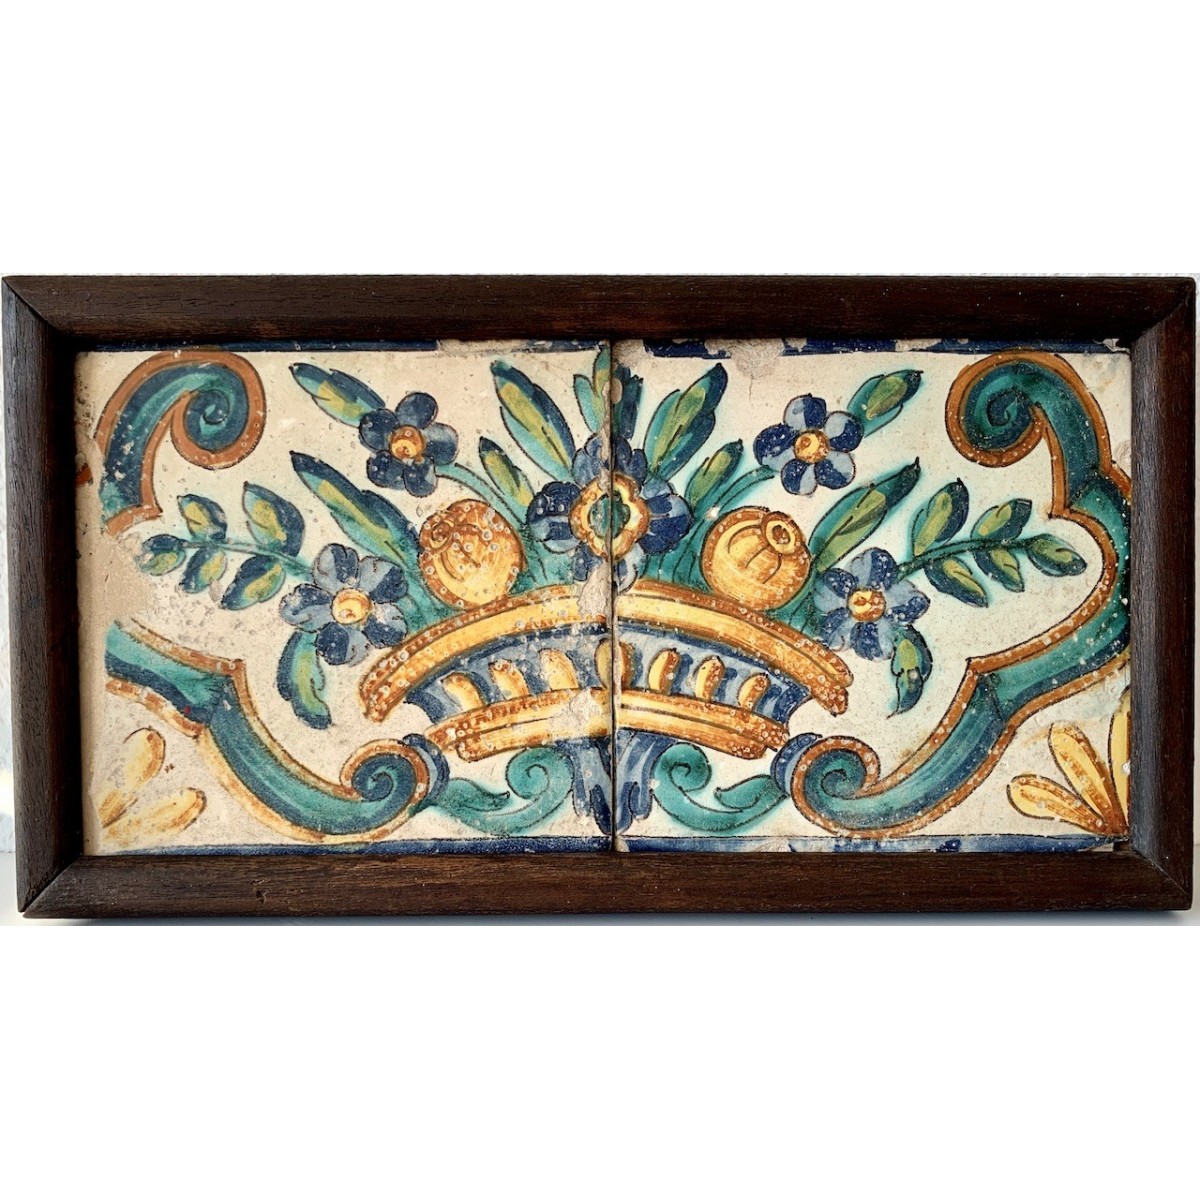  Azulejos valencianos del siglo XVIII